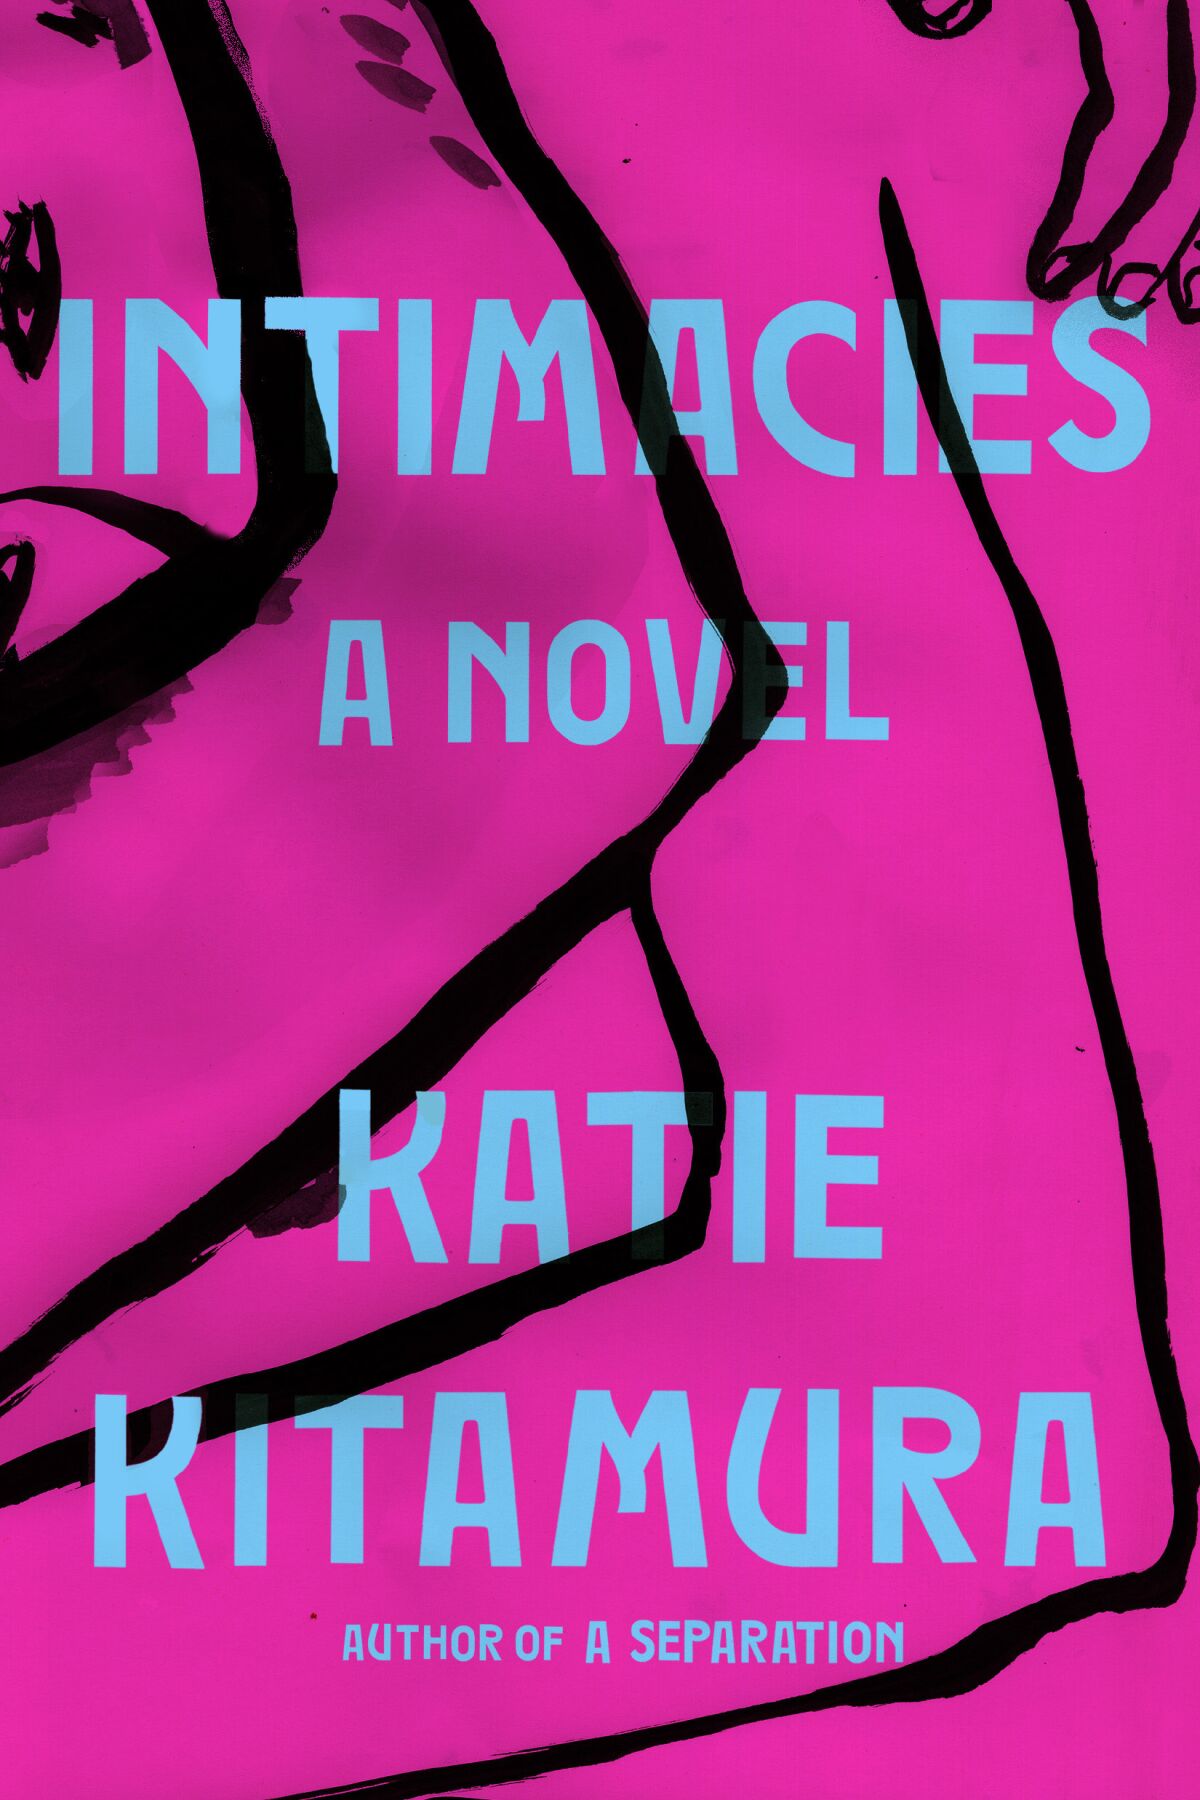 "Intimacies," by Katie Kitamura